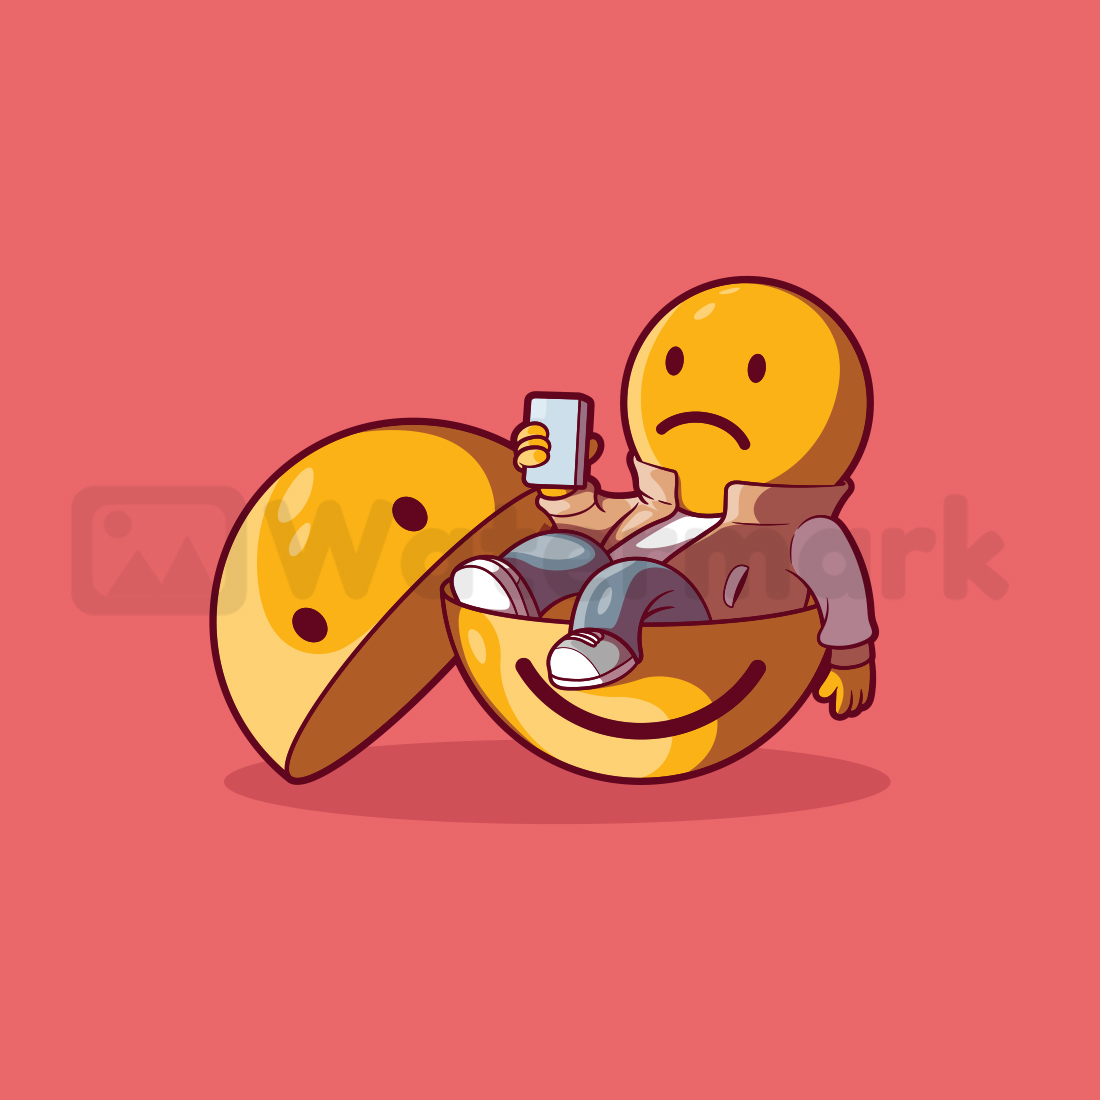 Sad Emoji! cover image.